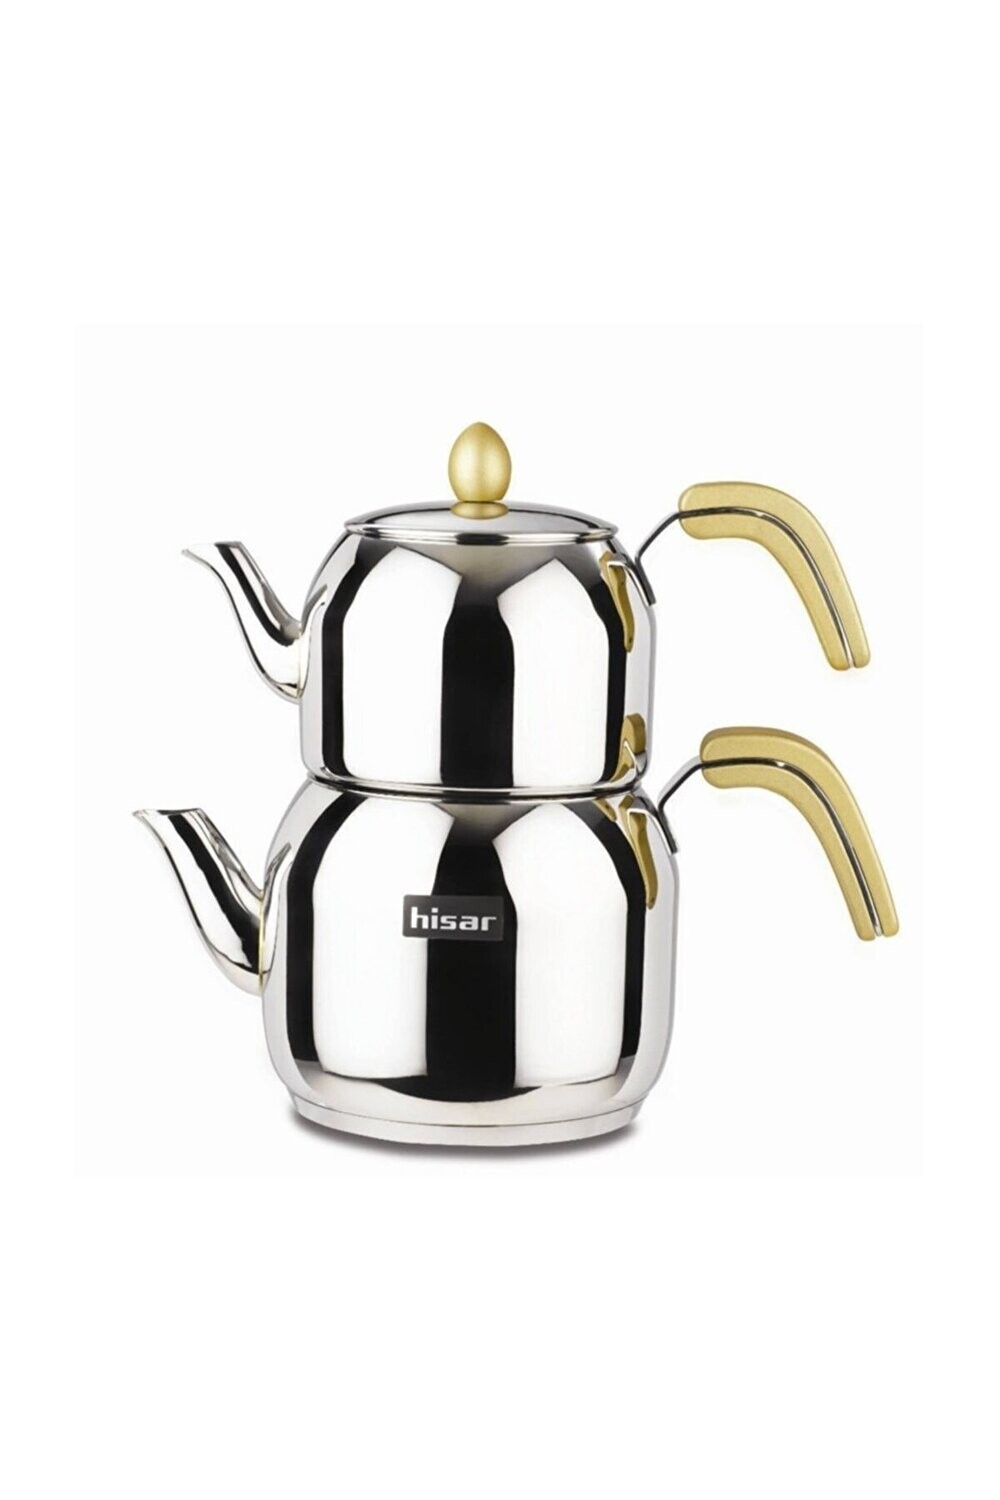 HISAR Monaco Golden Tea Pot - Teapots - Caydanlik Set Big